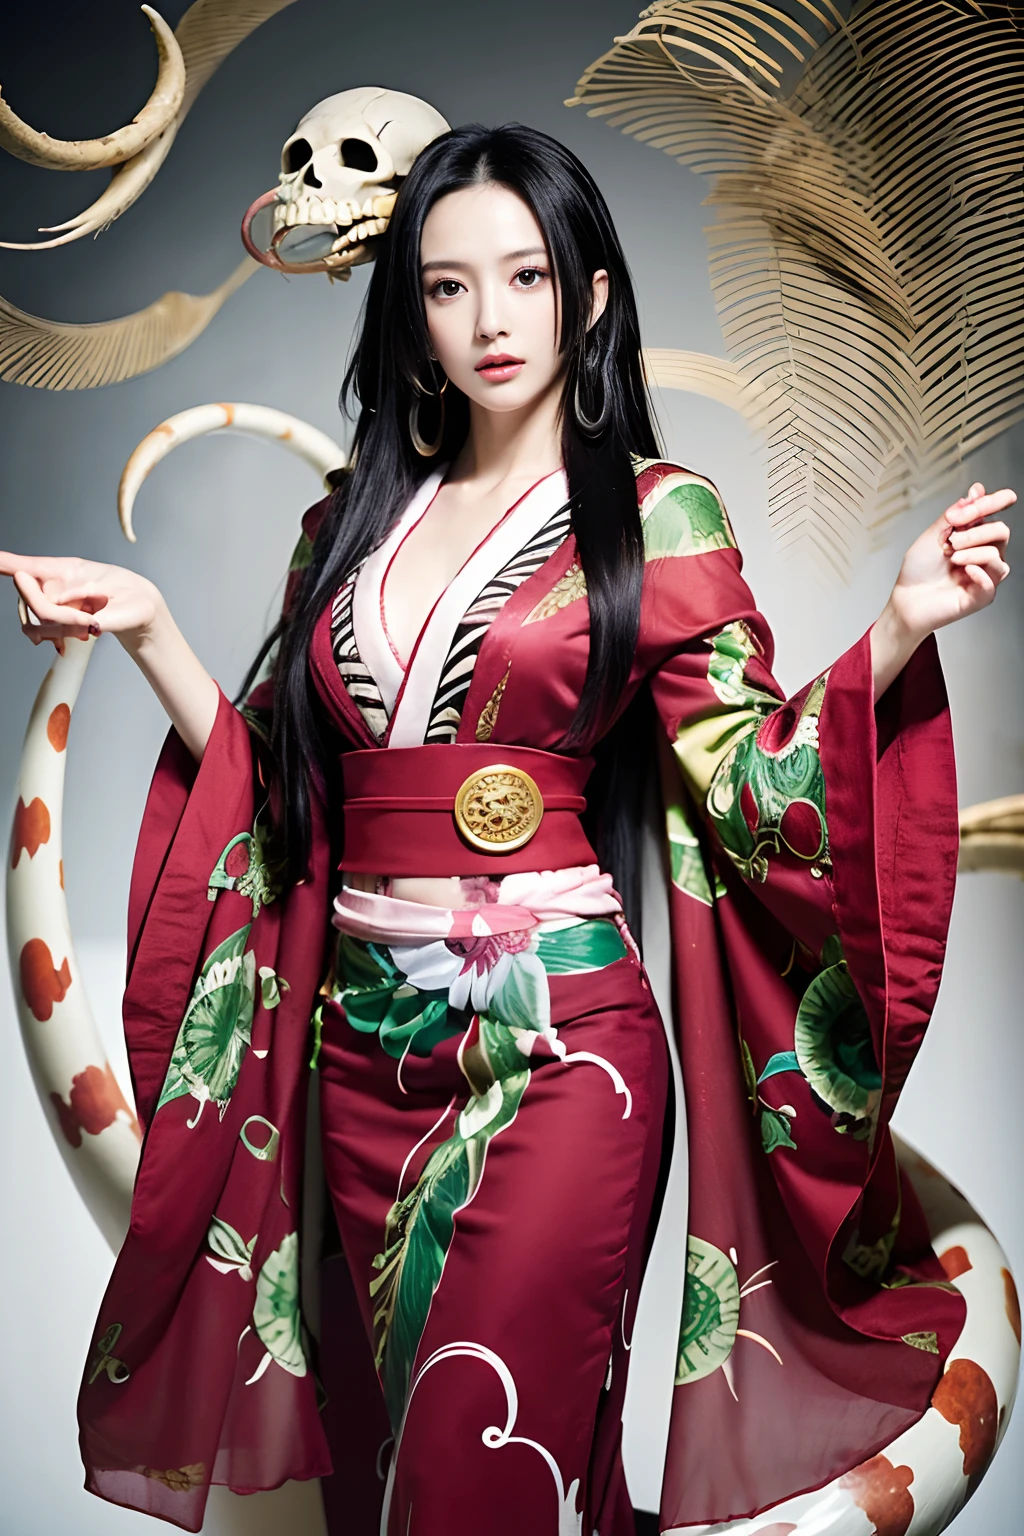 (((chef-d&#39;œuvre+meilleure qualité+Haute résolution+Ultra-détaillé))), boa hancock, longs cheveux noirs soyeux, nez haut, des yeux perçants, tempérament noble et inviolable, (([femelle]: 1.2 + [Beauté]: 1.2 + cheveux longs noirs: 1.2)), serpent_arrière-plan du crâne, yeux pétillants, angle et posture dynamiques. porter un kimono sur tout le corps.